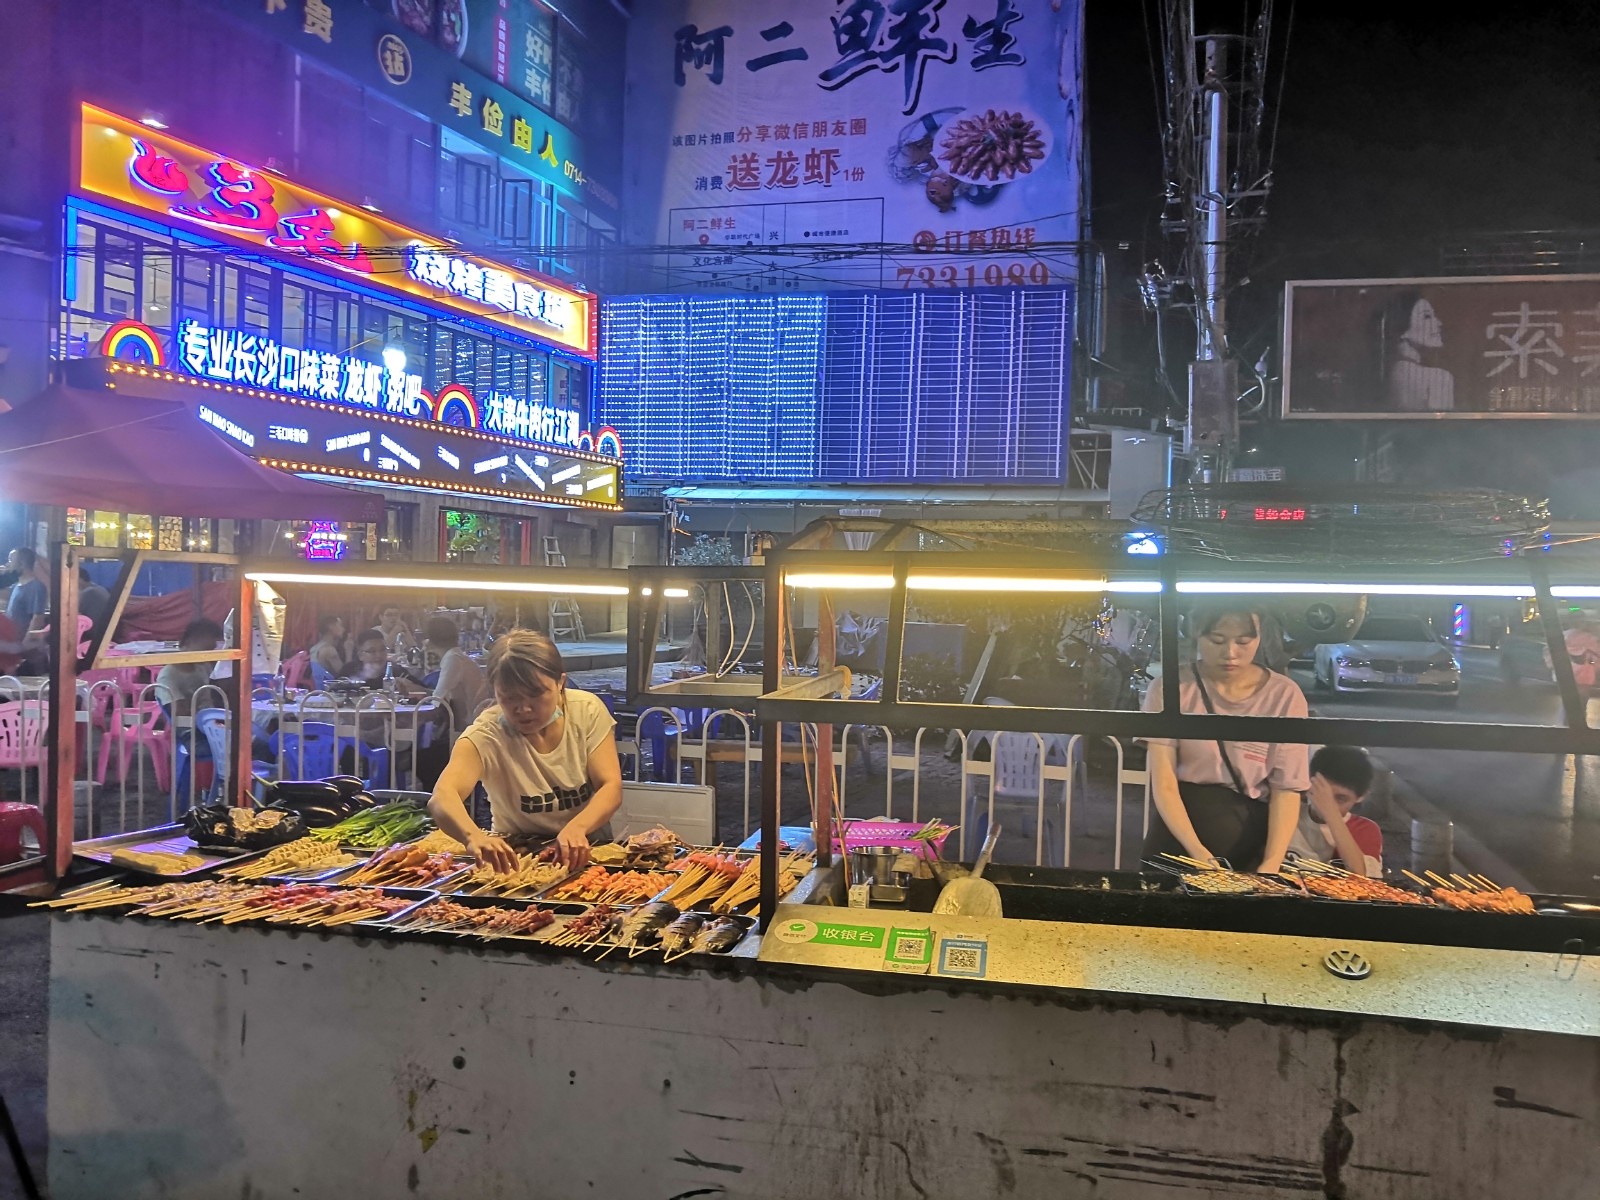 湖北阳新县文化宫路马路夜市上的烧烤摊在忙碌.